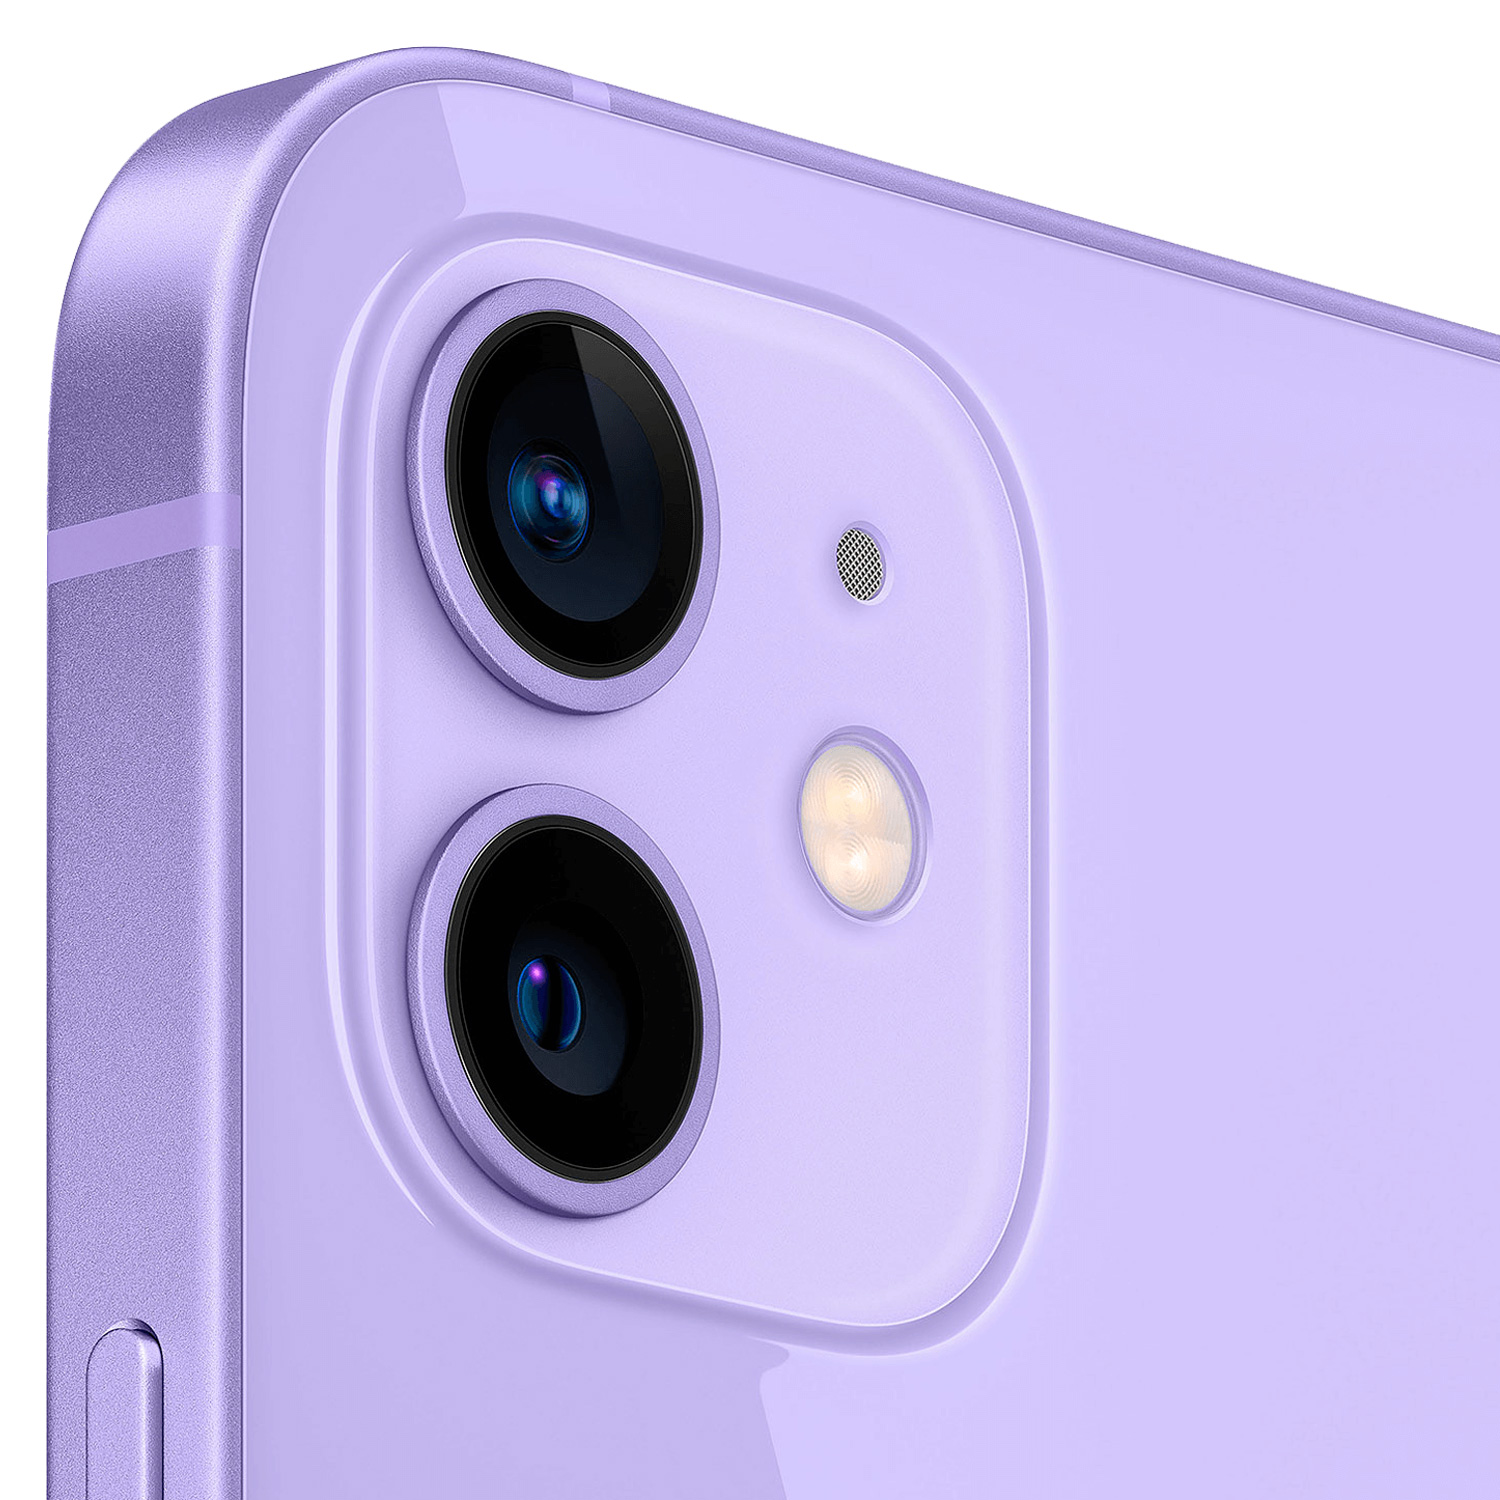 Celular Apple iPhone 12 A2403 QL 128GB / 5G / Tela 6.1" / Câmeras de 12MP+12MP e 12MP - Purple (CPO)
